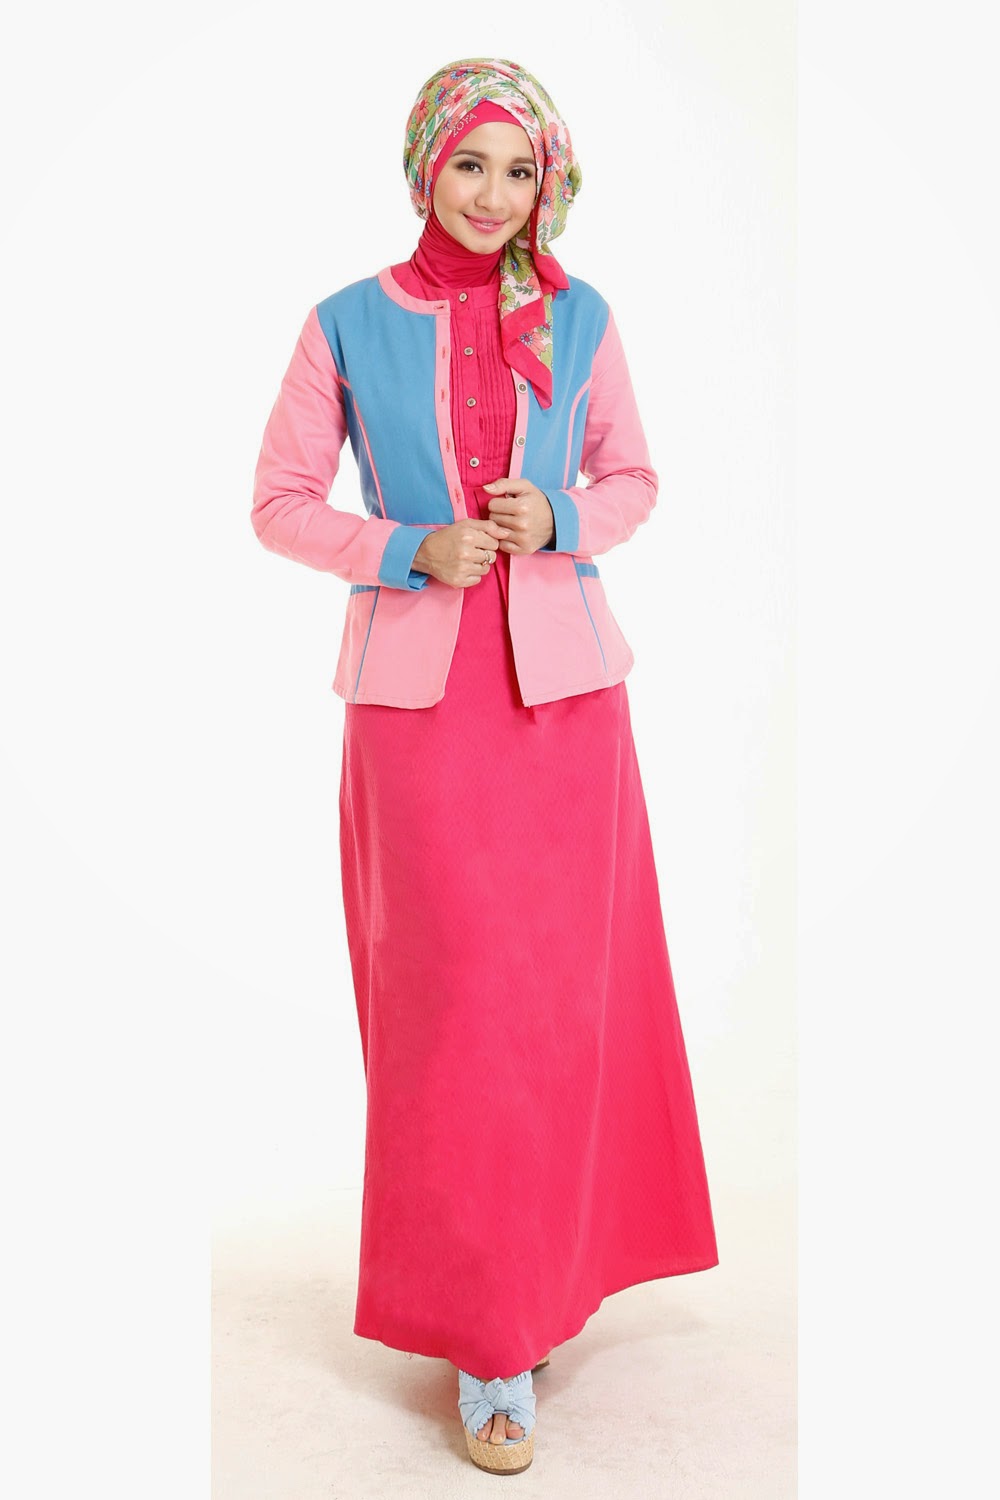 23 Contoh Model Baju Muslim Artis Masa Kini Kumpulan Model Baju